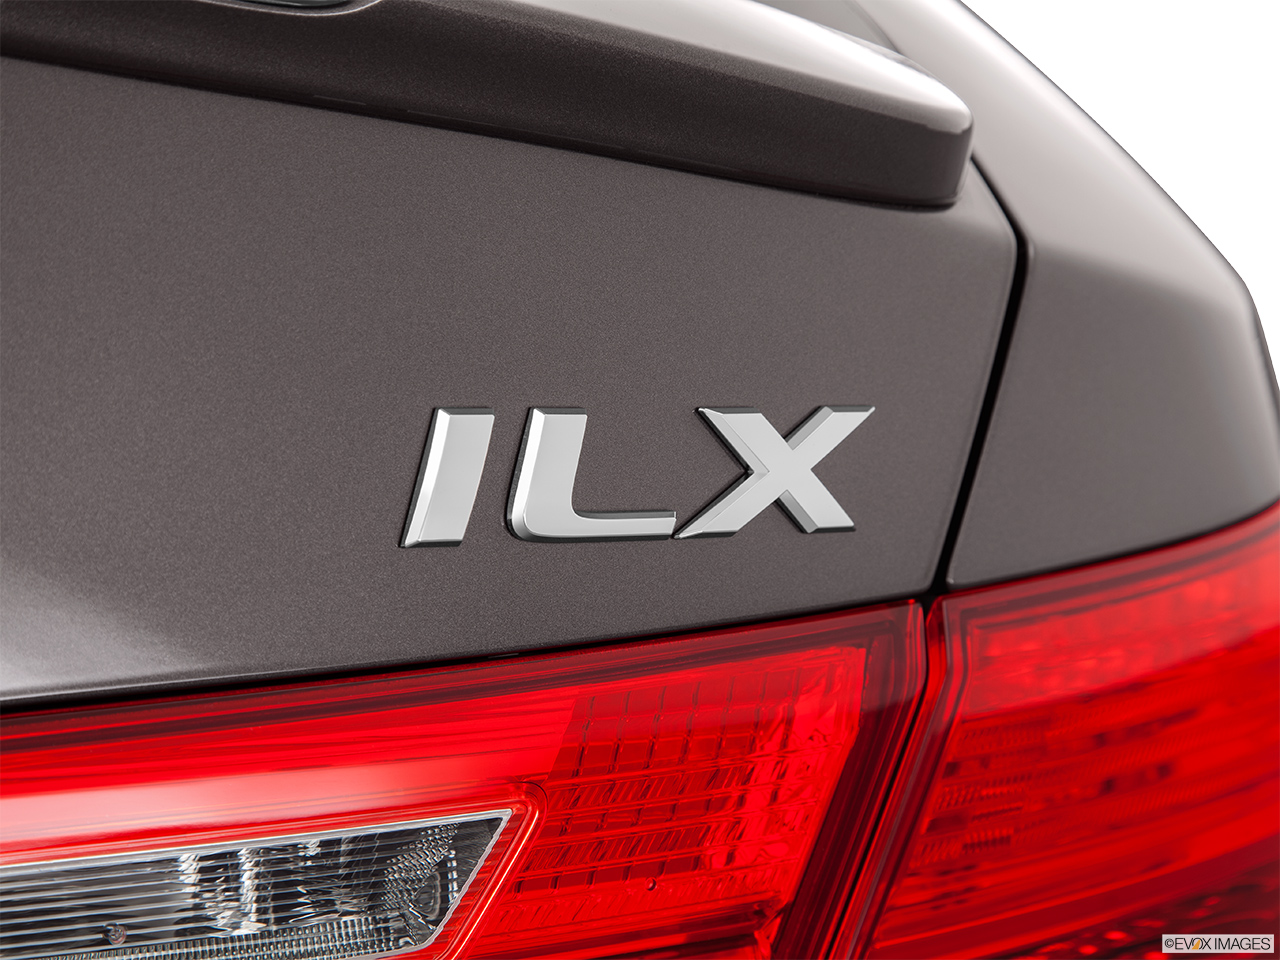 2014 Acura ILX Hybrid Base Rear model badge/emblem 